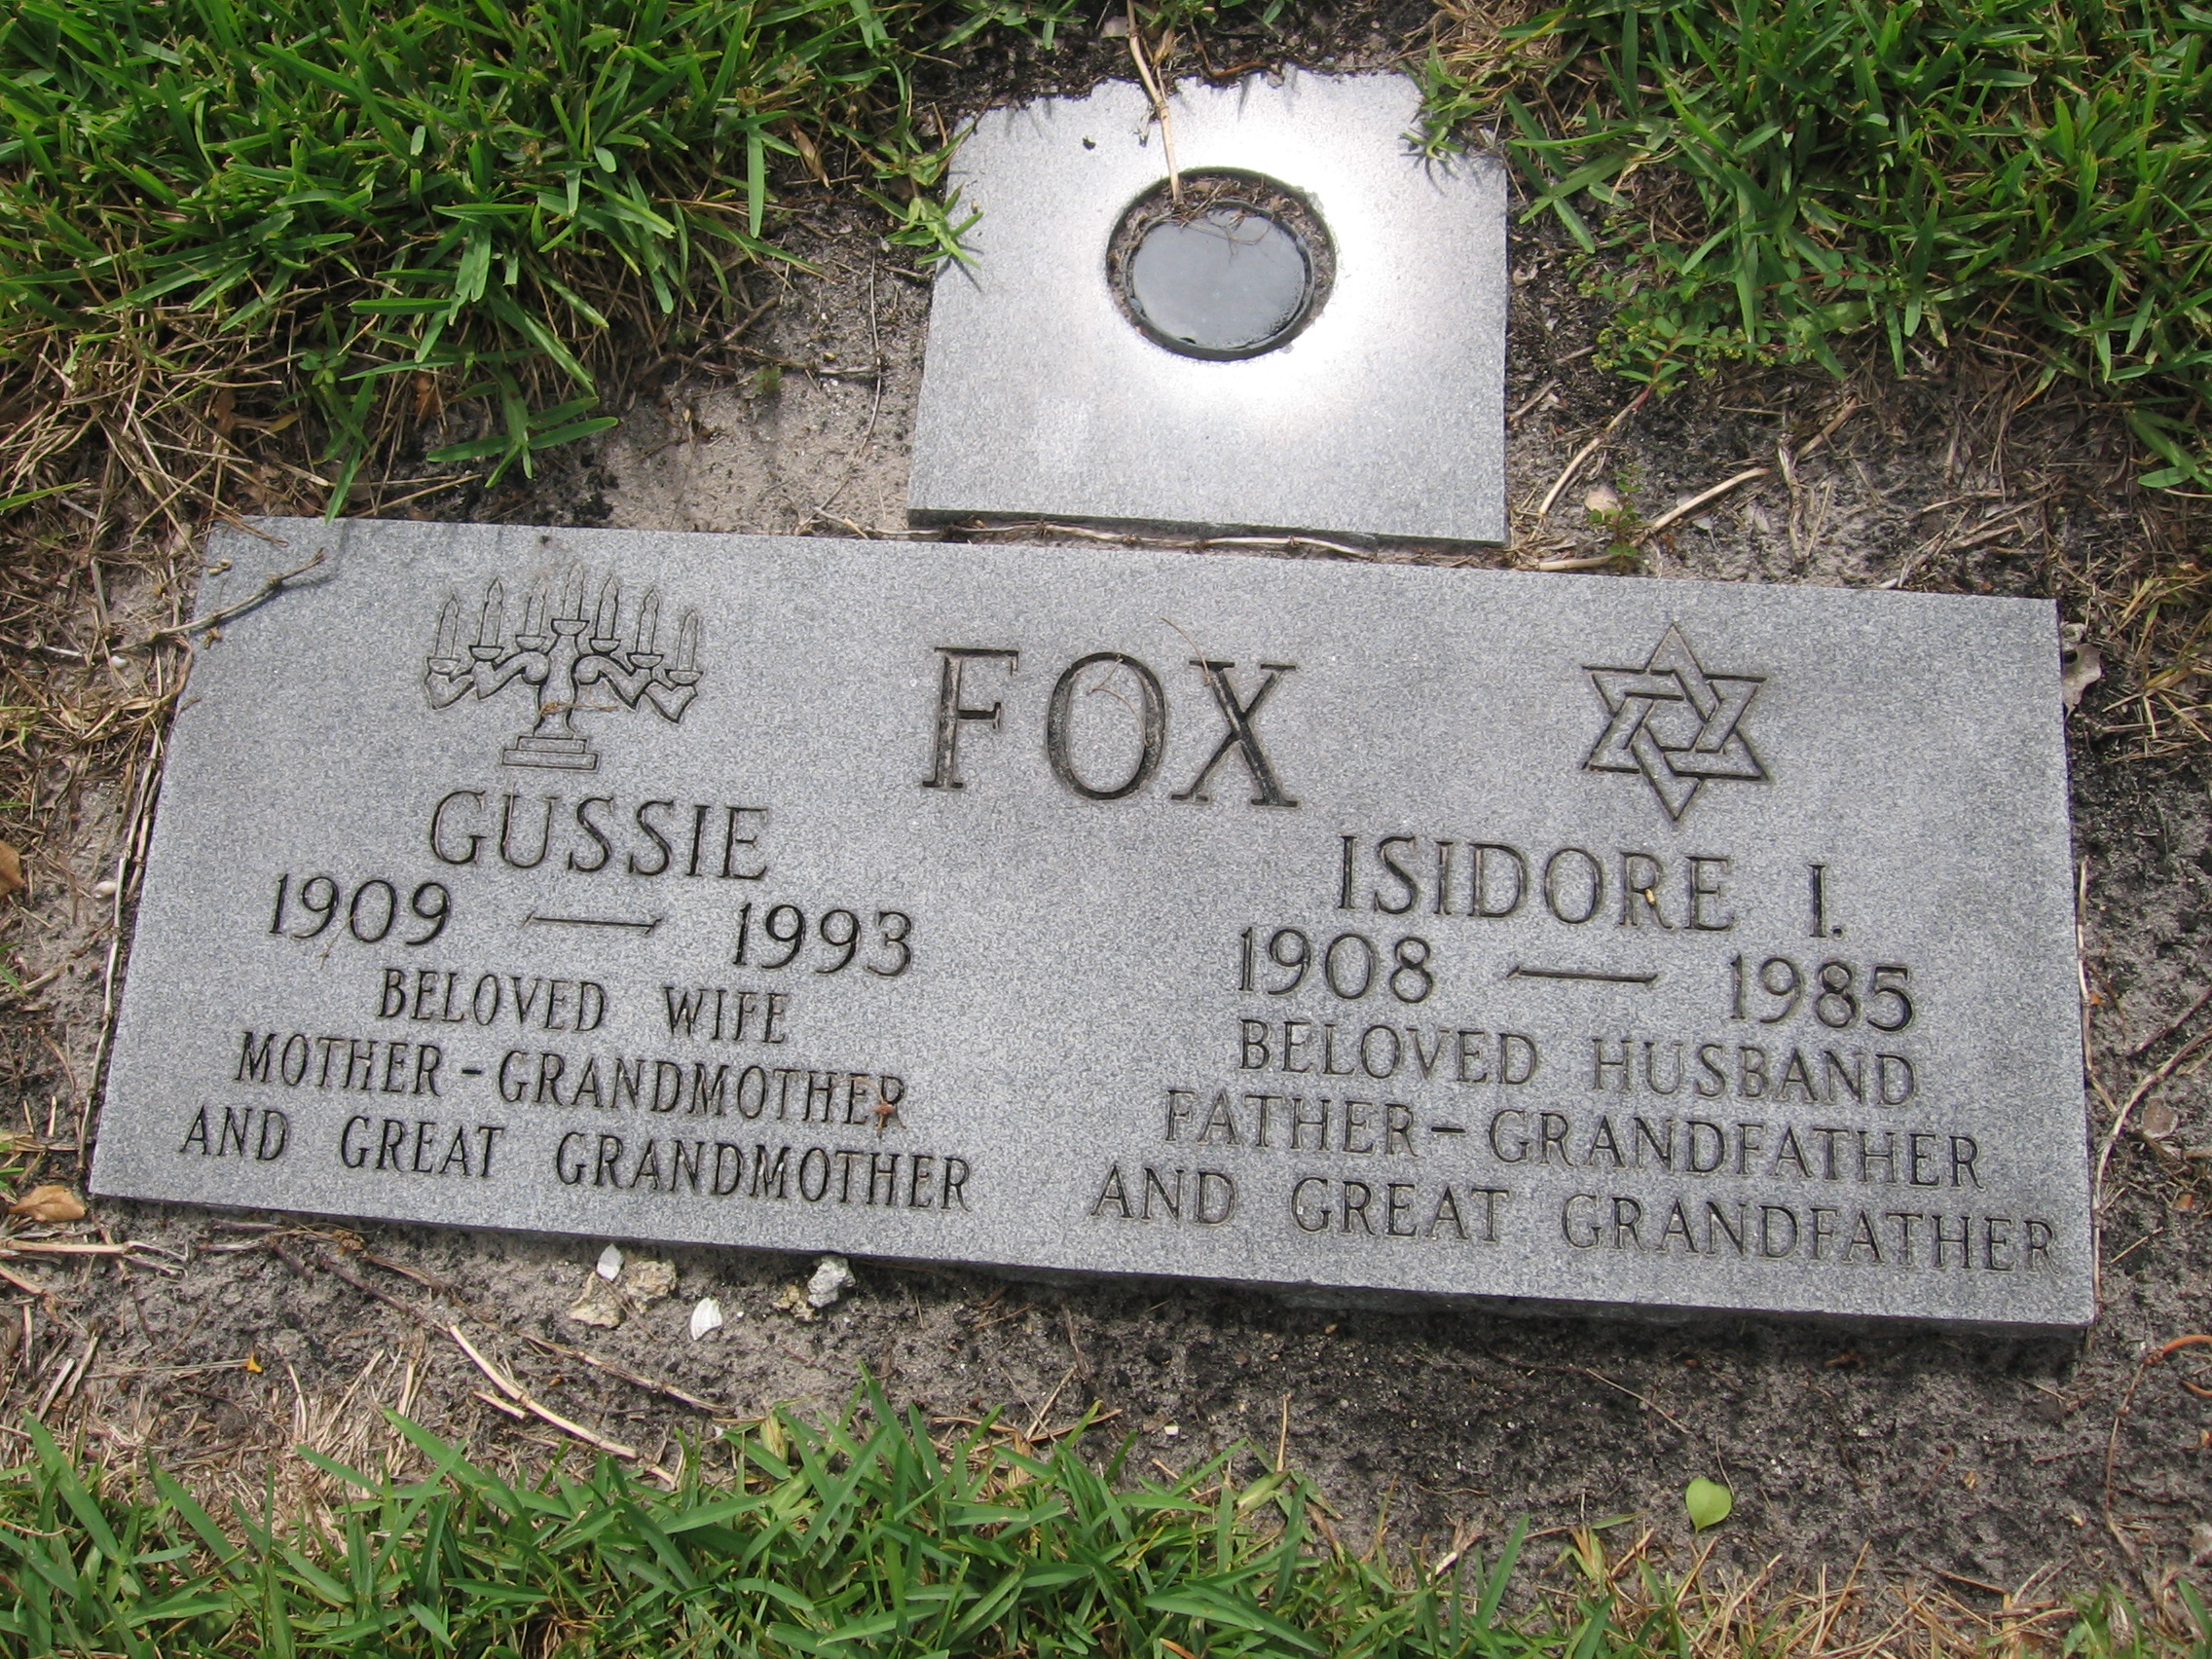 Gussie Fox